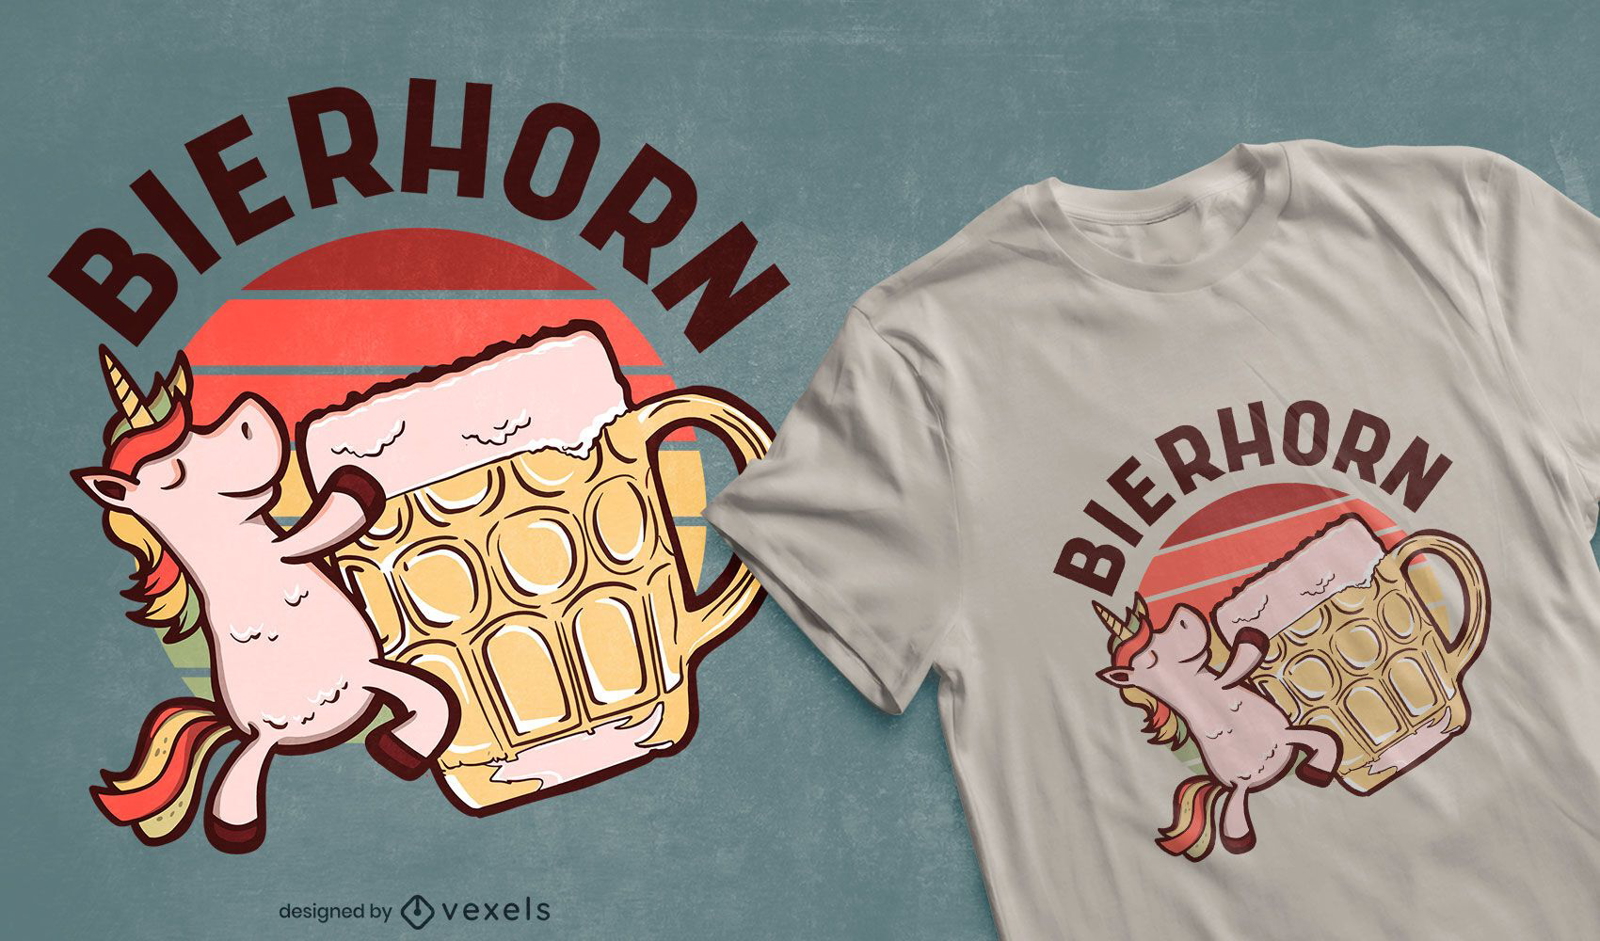 Einhorn, das Bier-T-Shirt Design trinkt